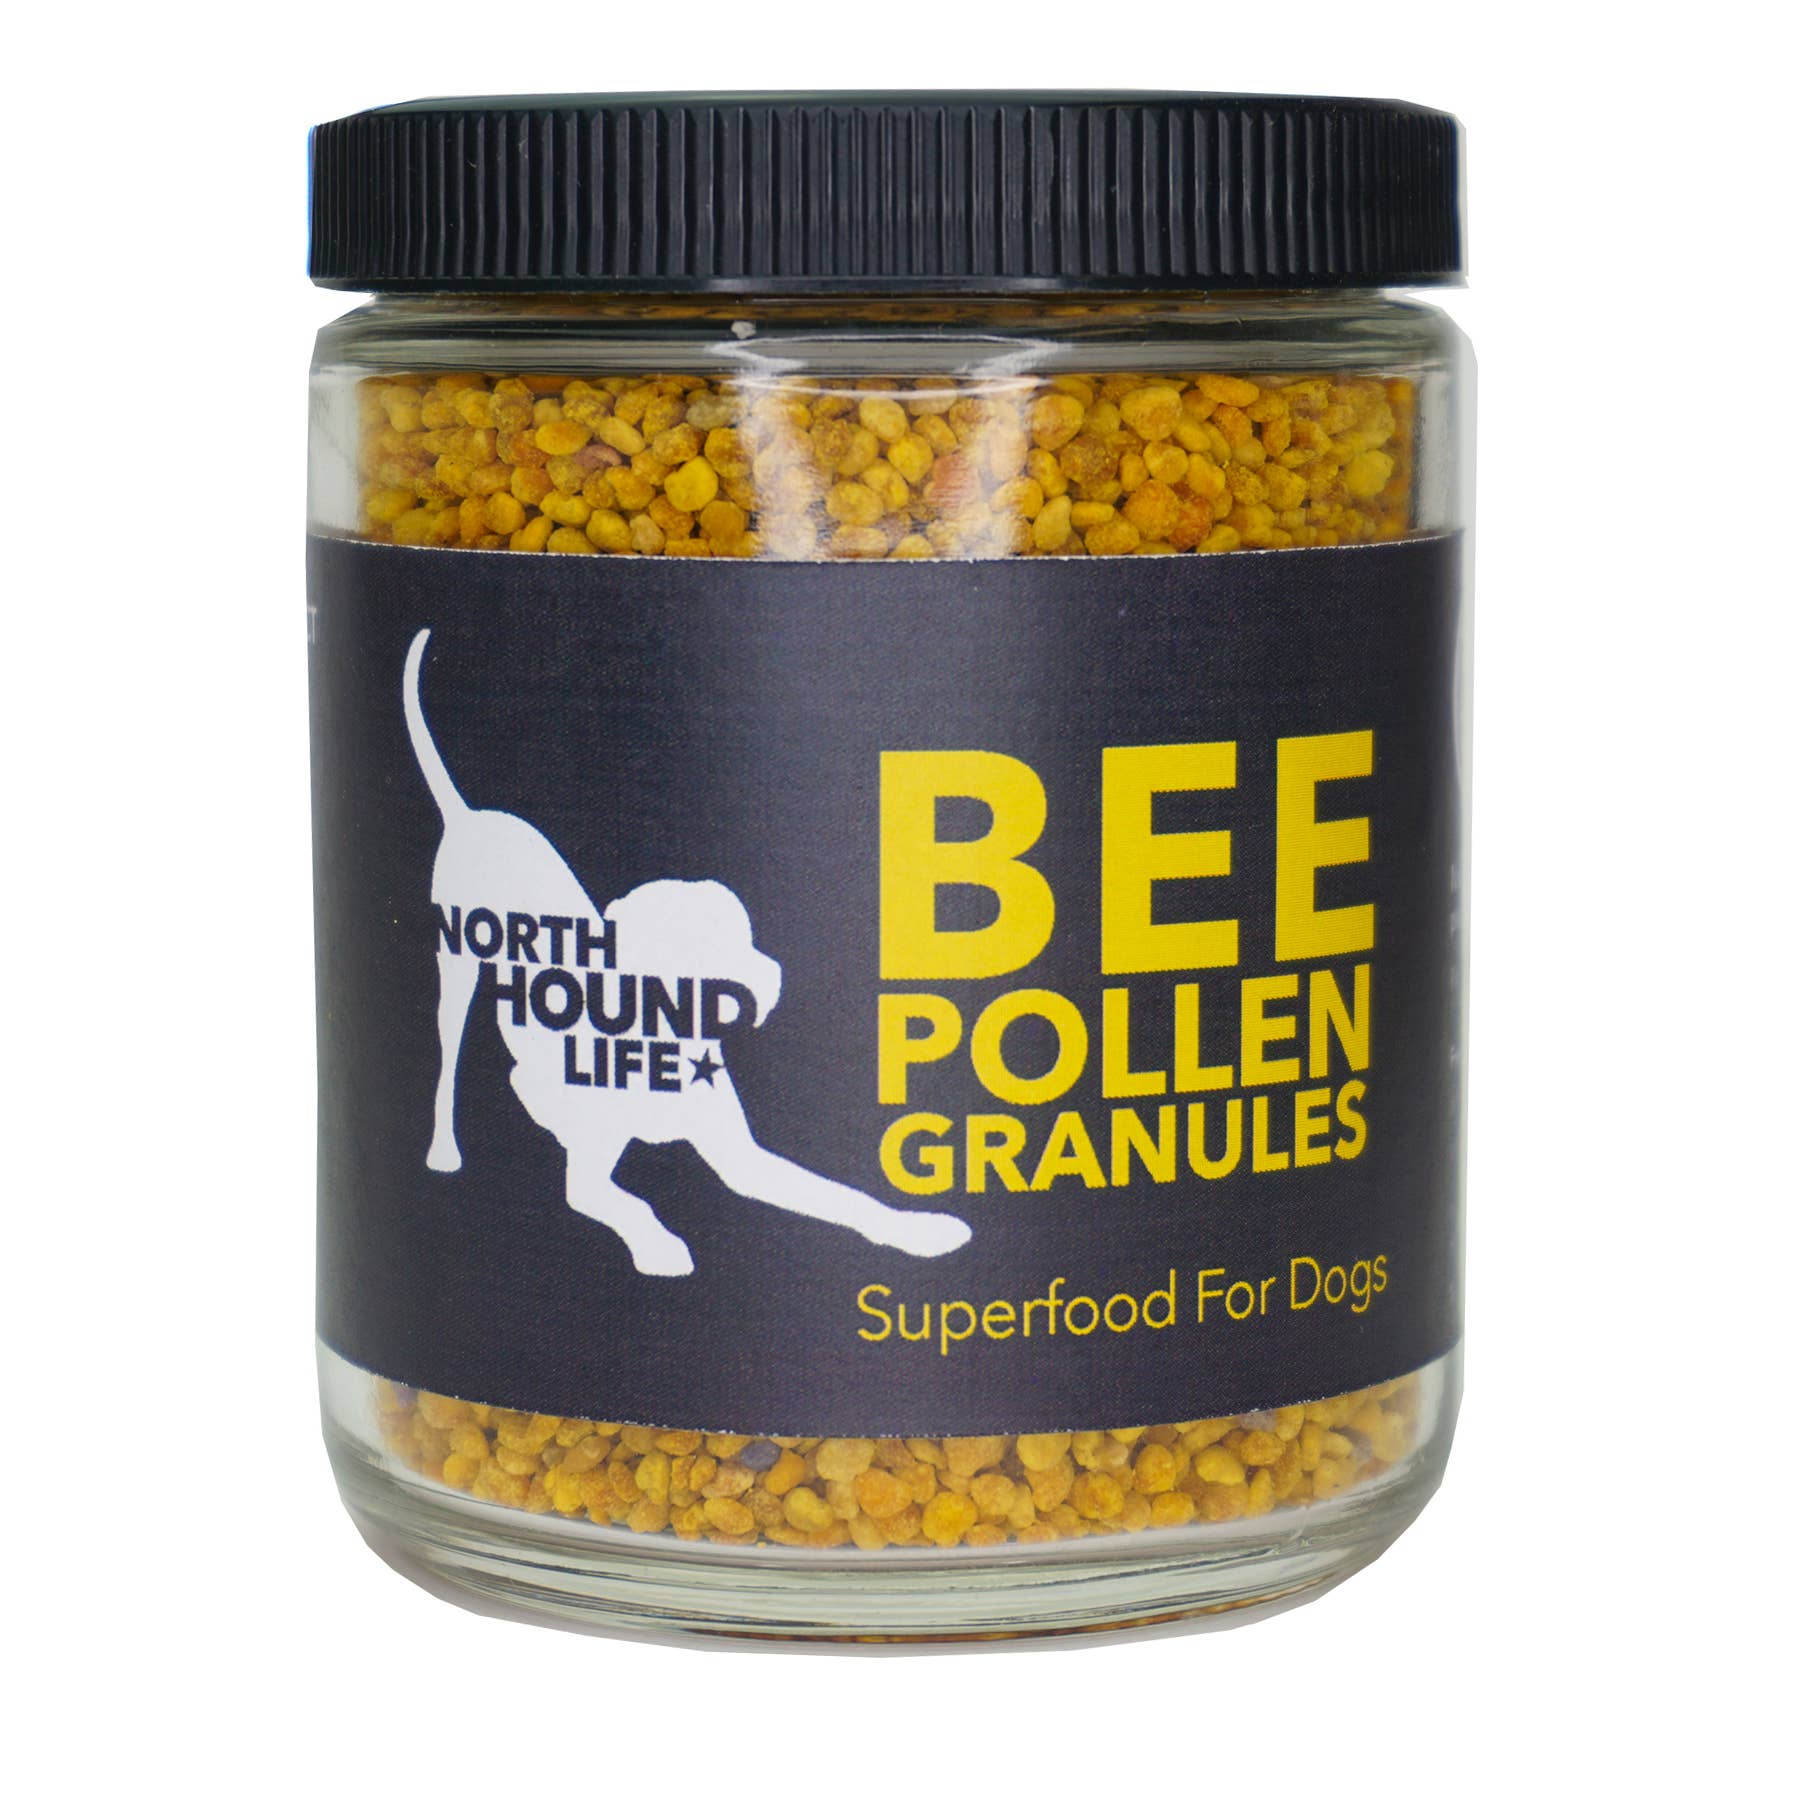 Pollen d'abeille: Super aliment pour chiens